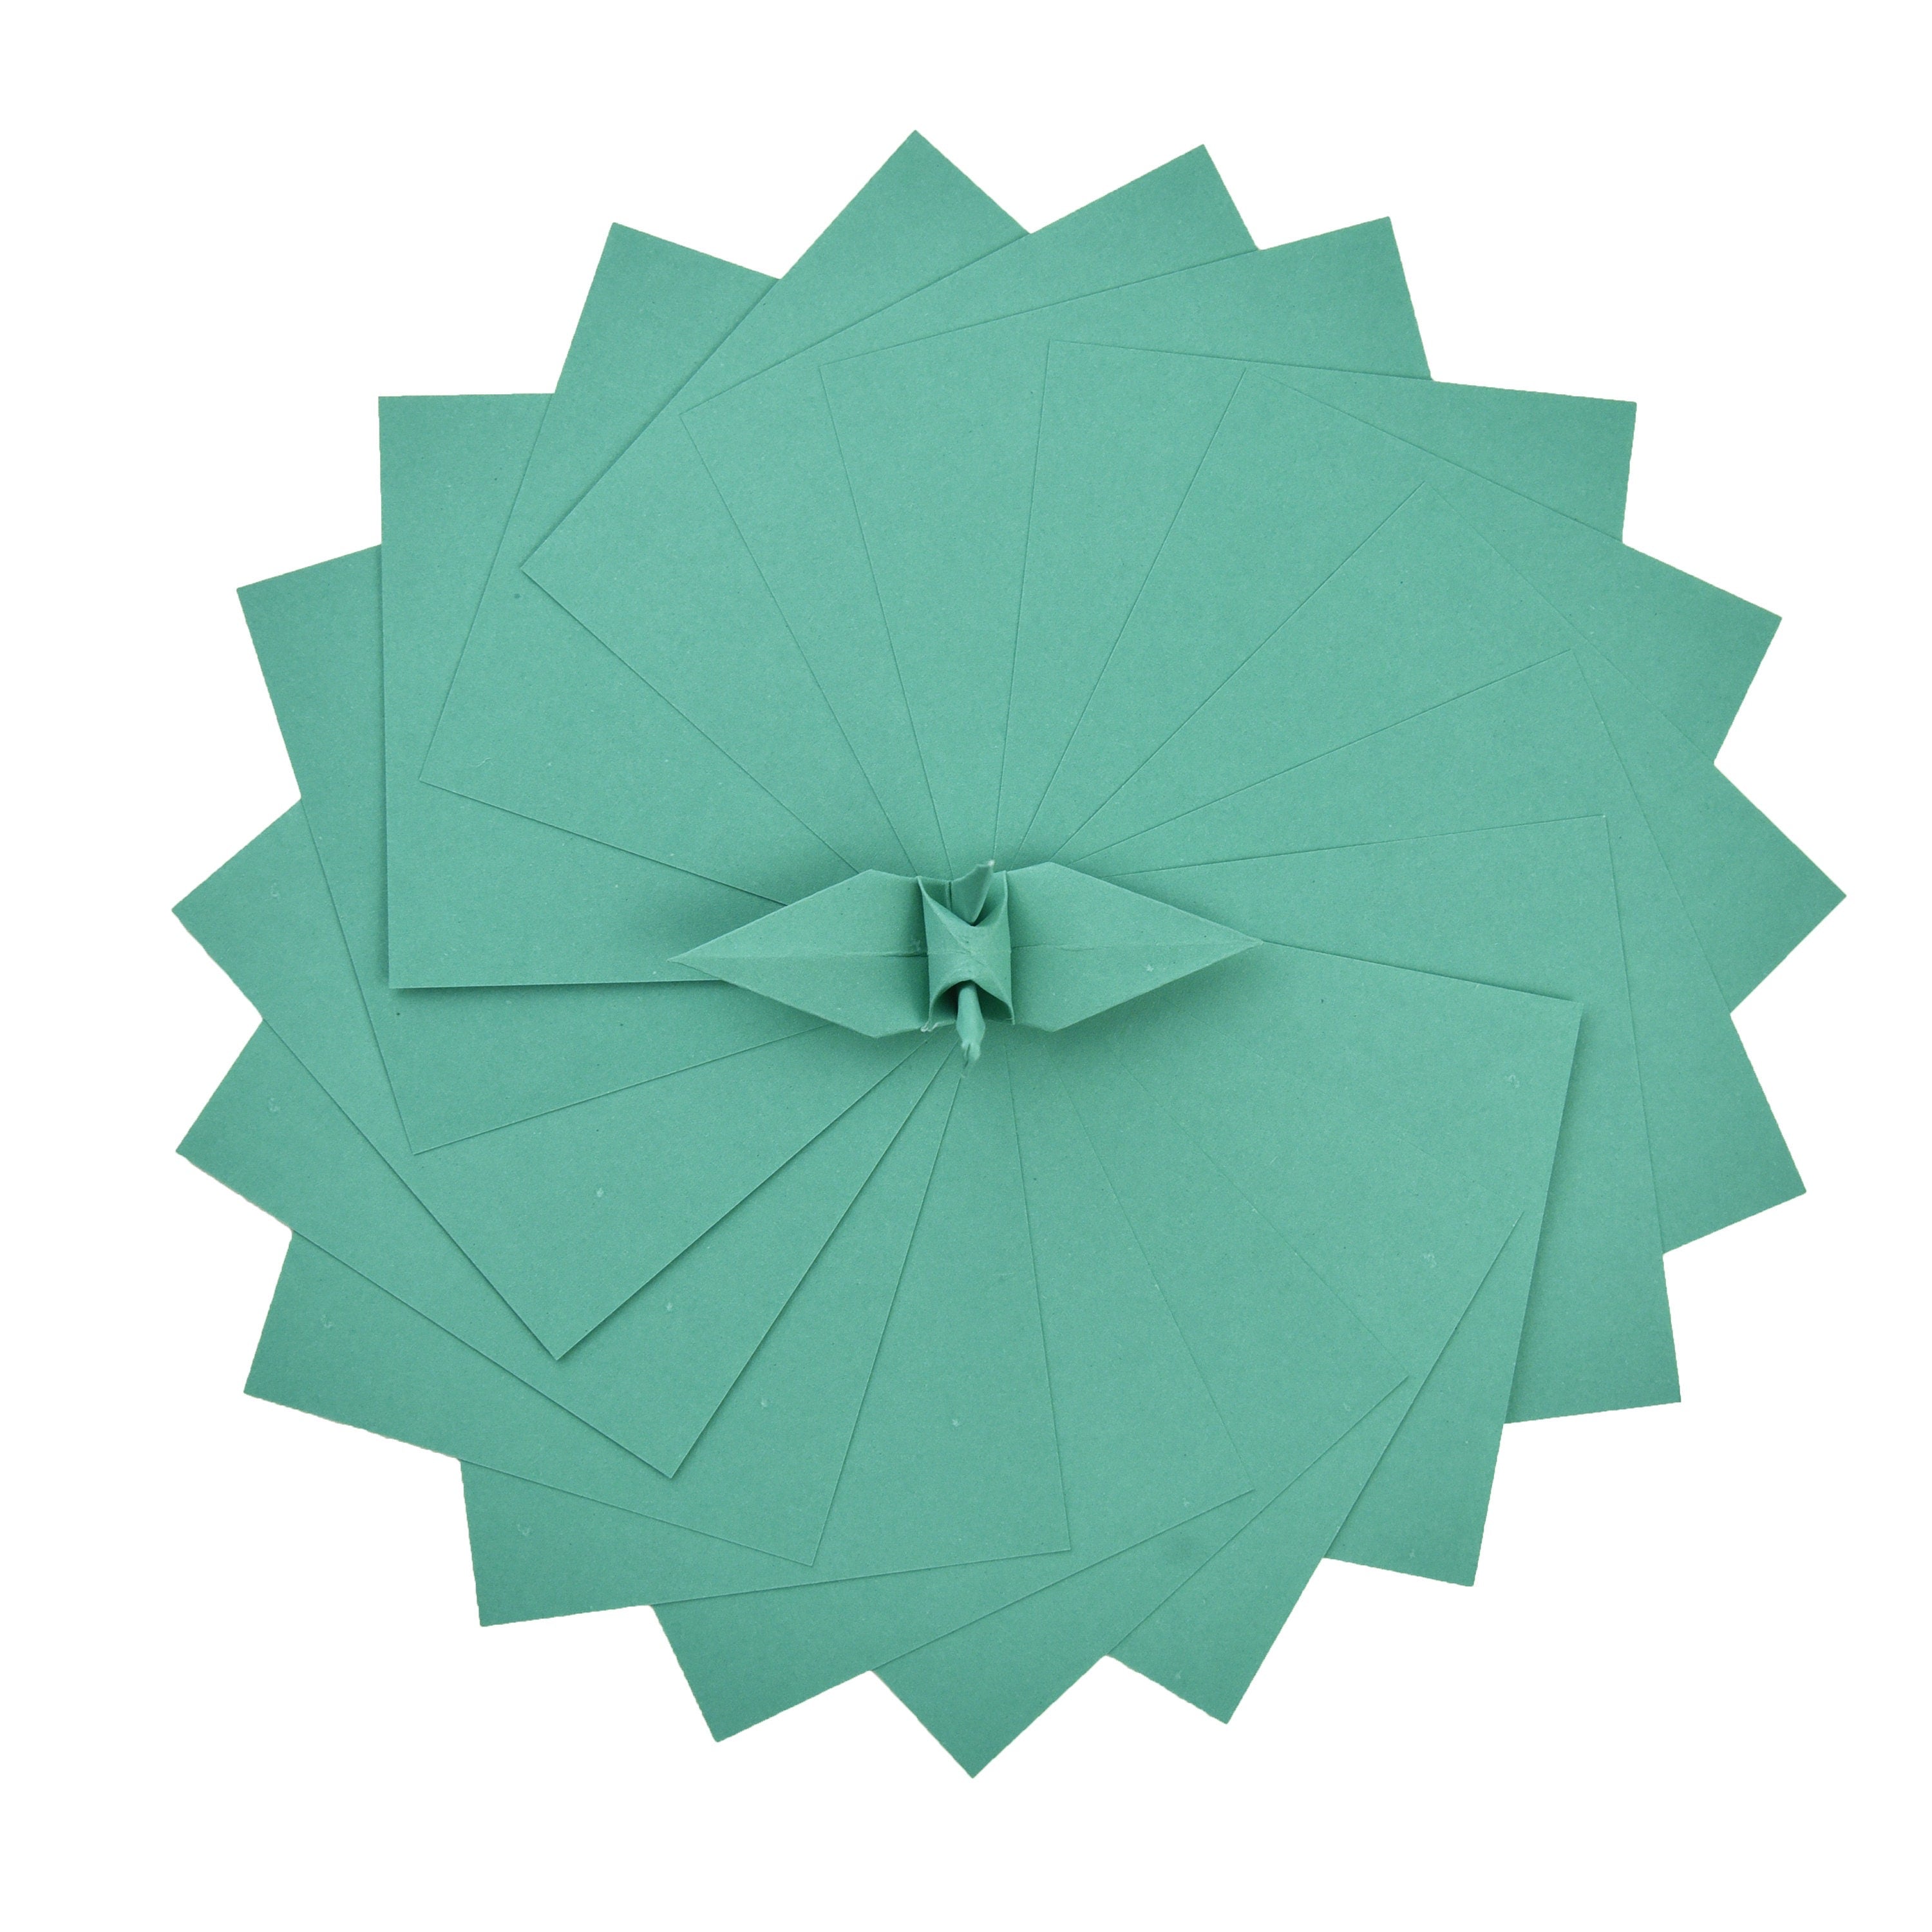 100 Hojas de Papel Origami - 3x3 pulgadas - Paquete de Papel Cuadrado para Plegar, Grullas de Origami y Decoración - S21